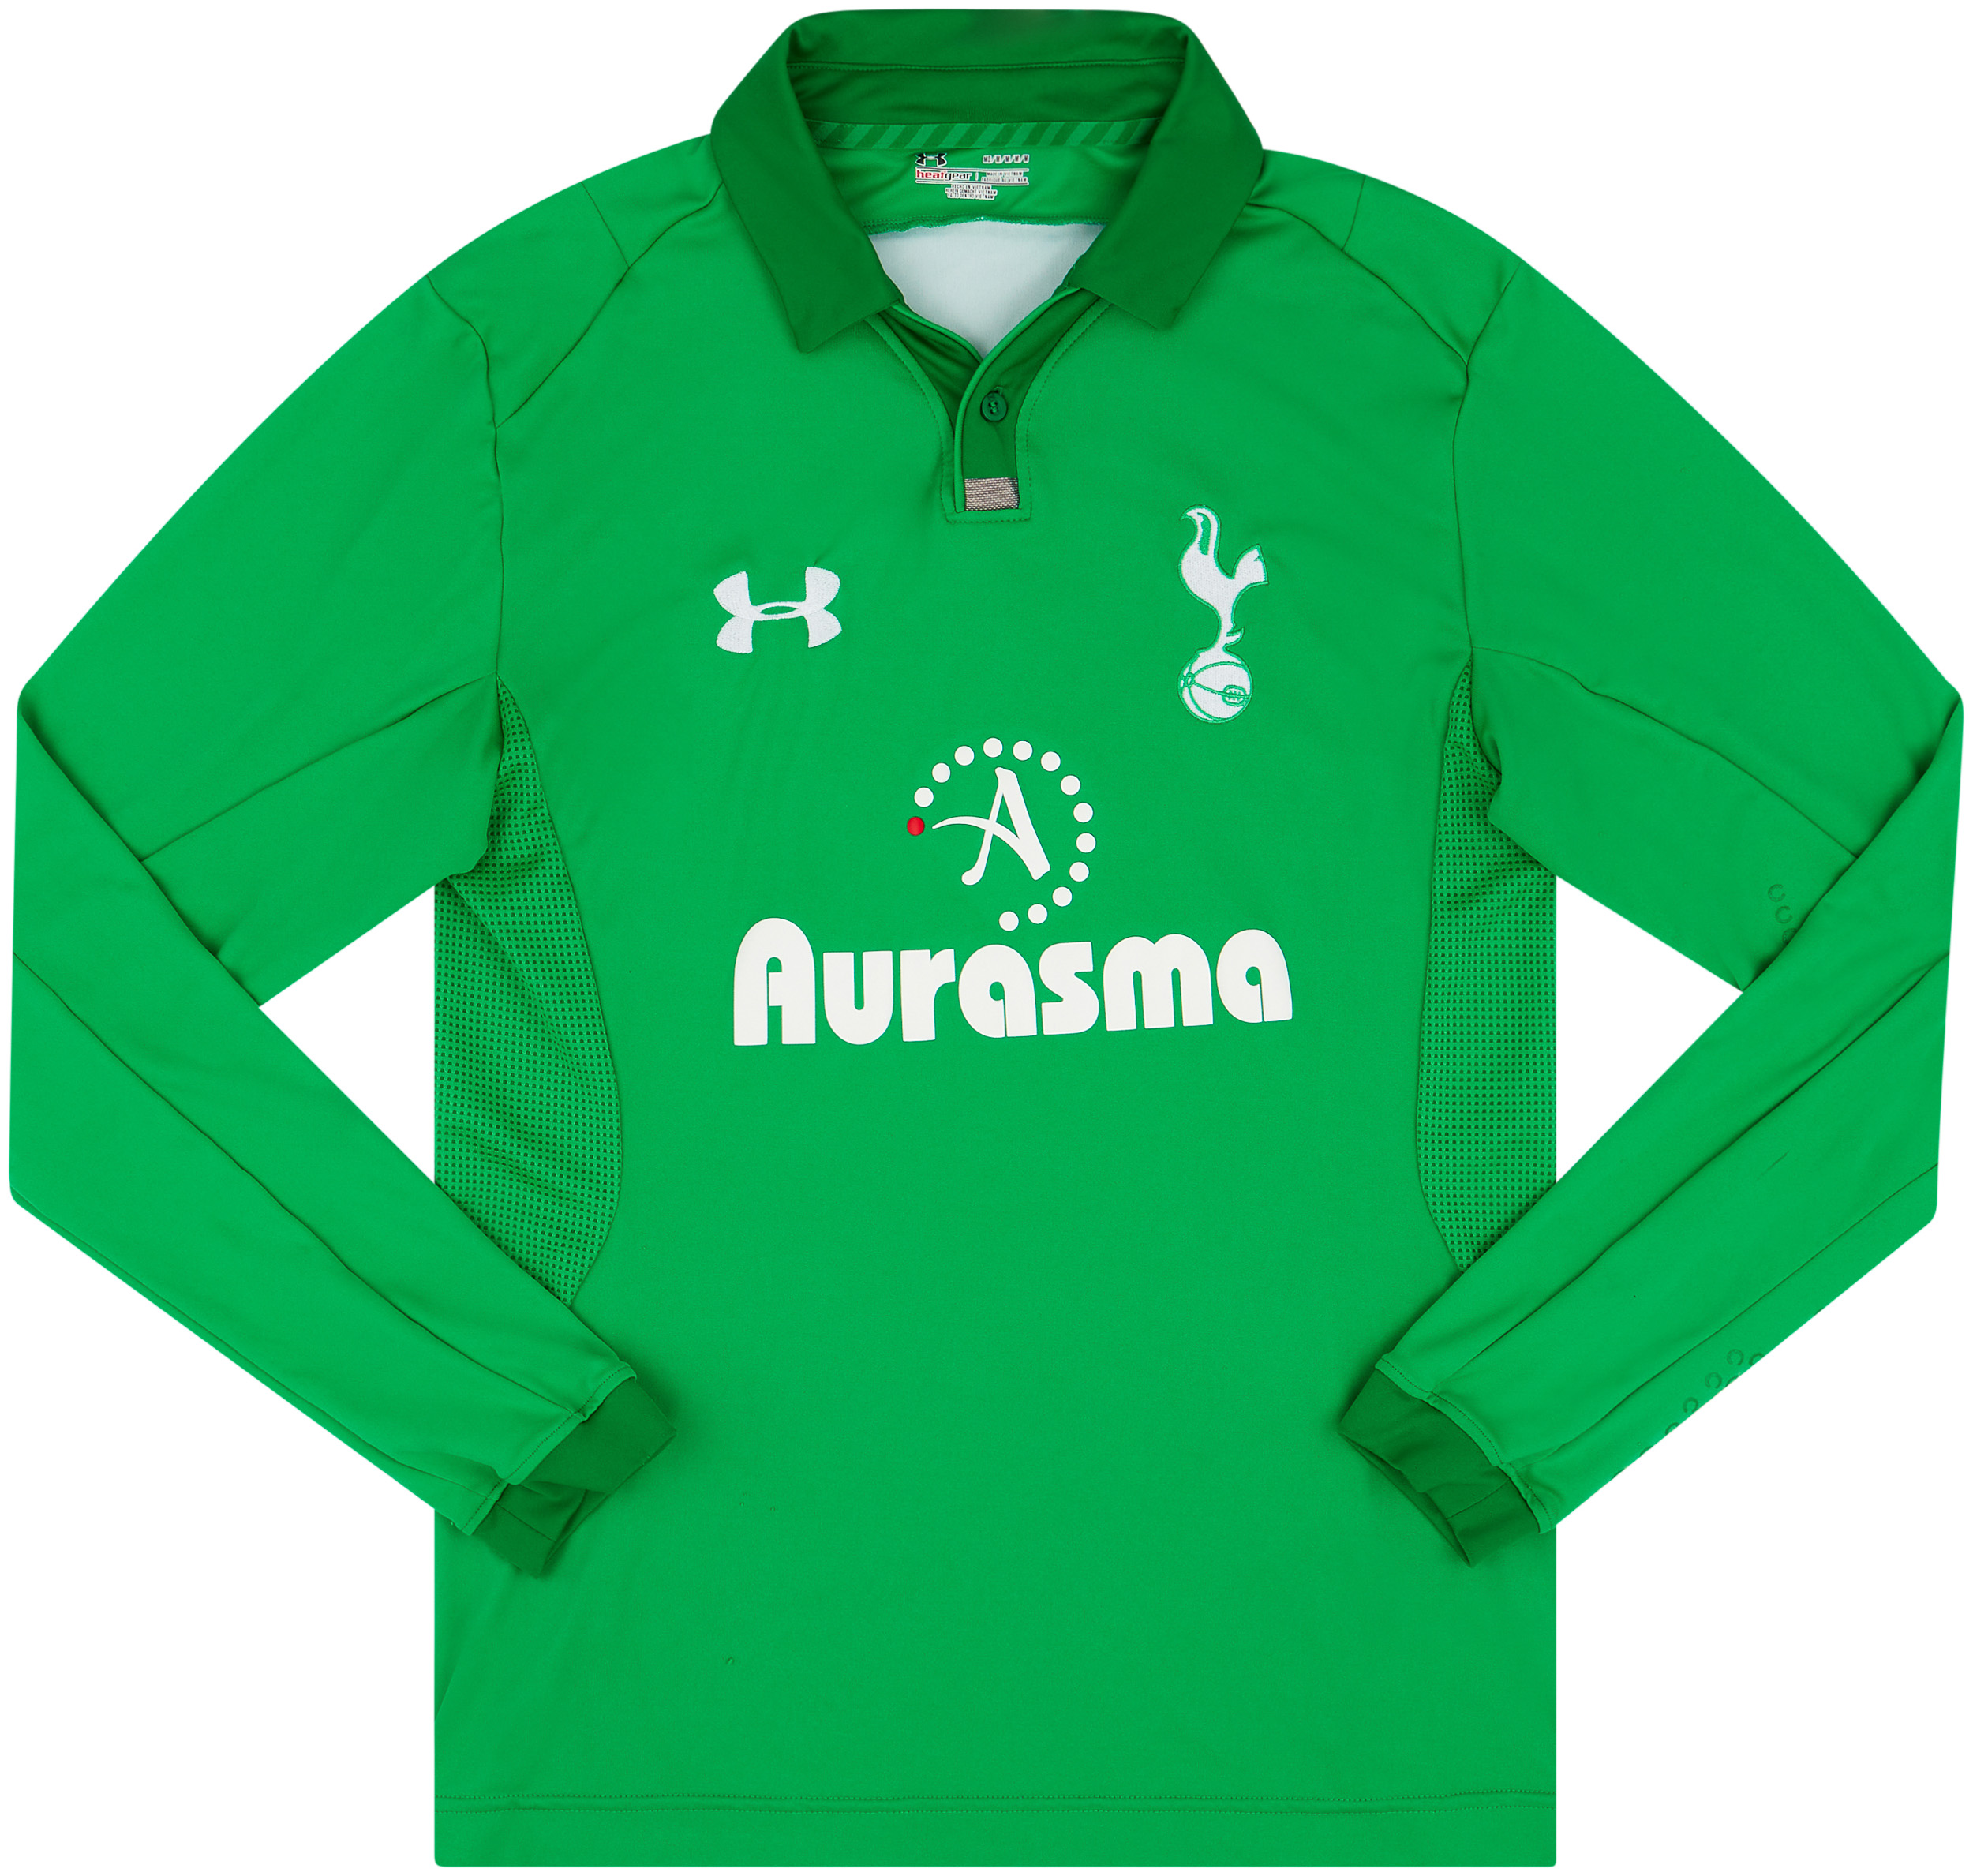 2012-2013 Tottenham Hotspur Gareth Bale #11 Home Under Armour Kit Shirt  Jersey